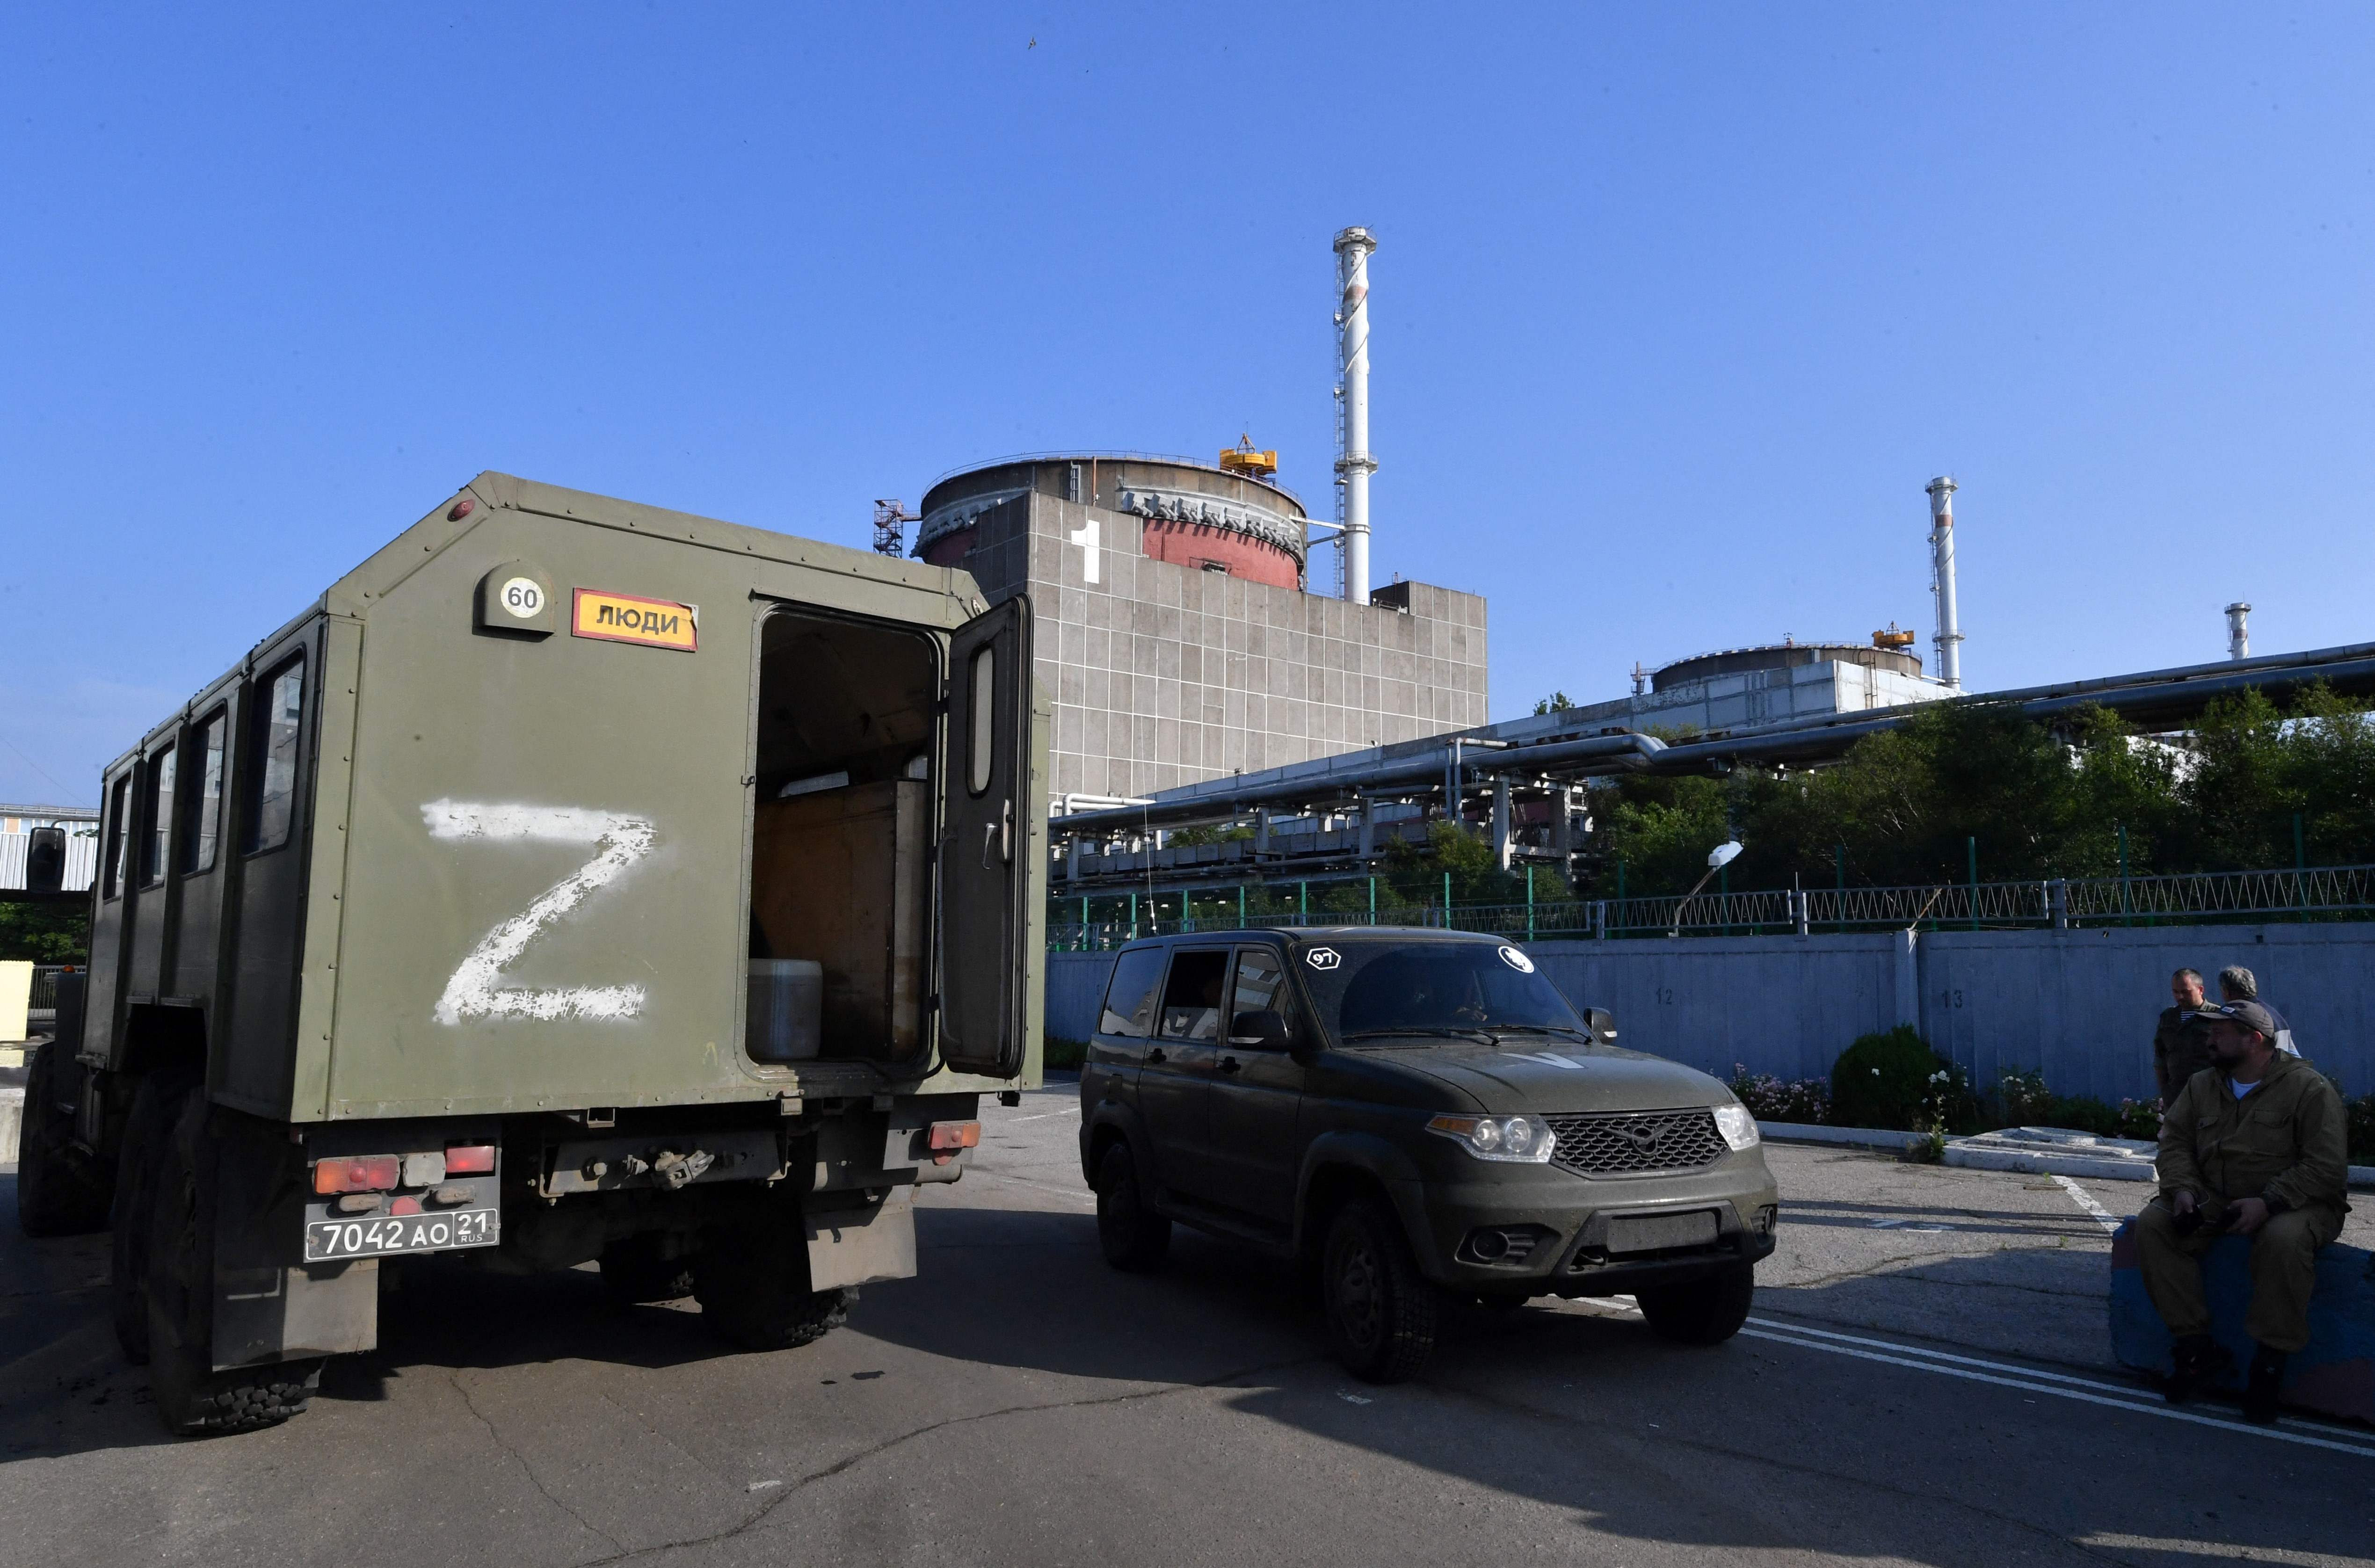 Lastwagen mit dem russischen Kriegssymbol „Z“ gehören seit der Übernahme zum festen Bestandteil des Werks